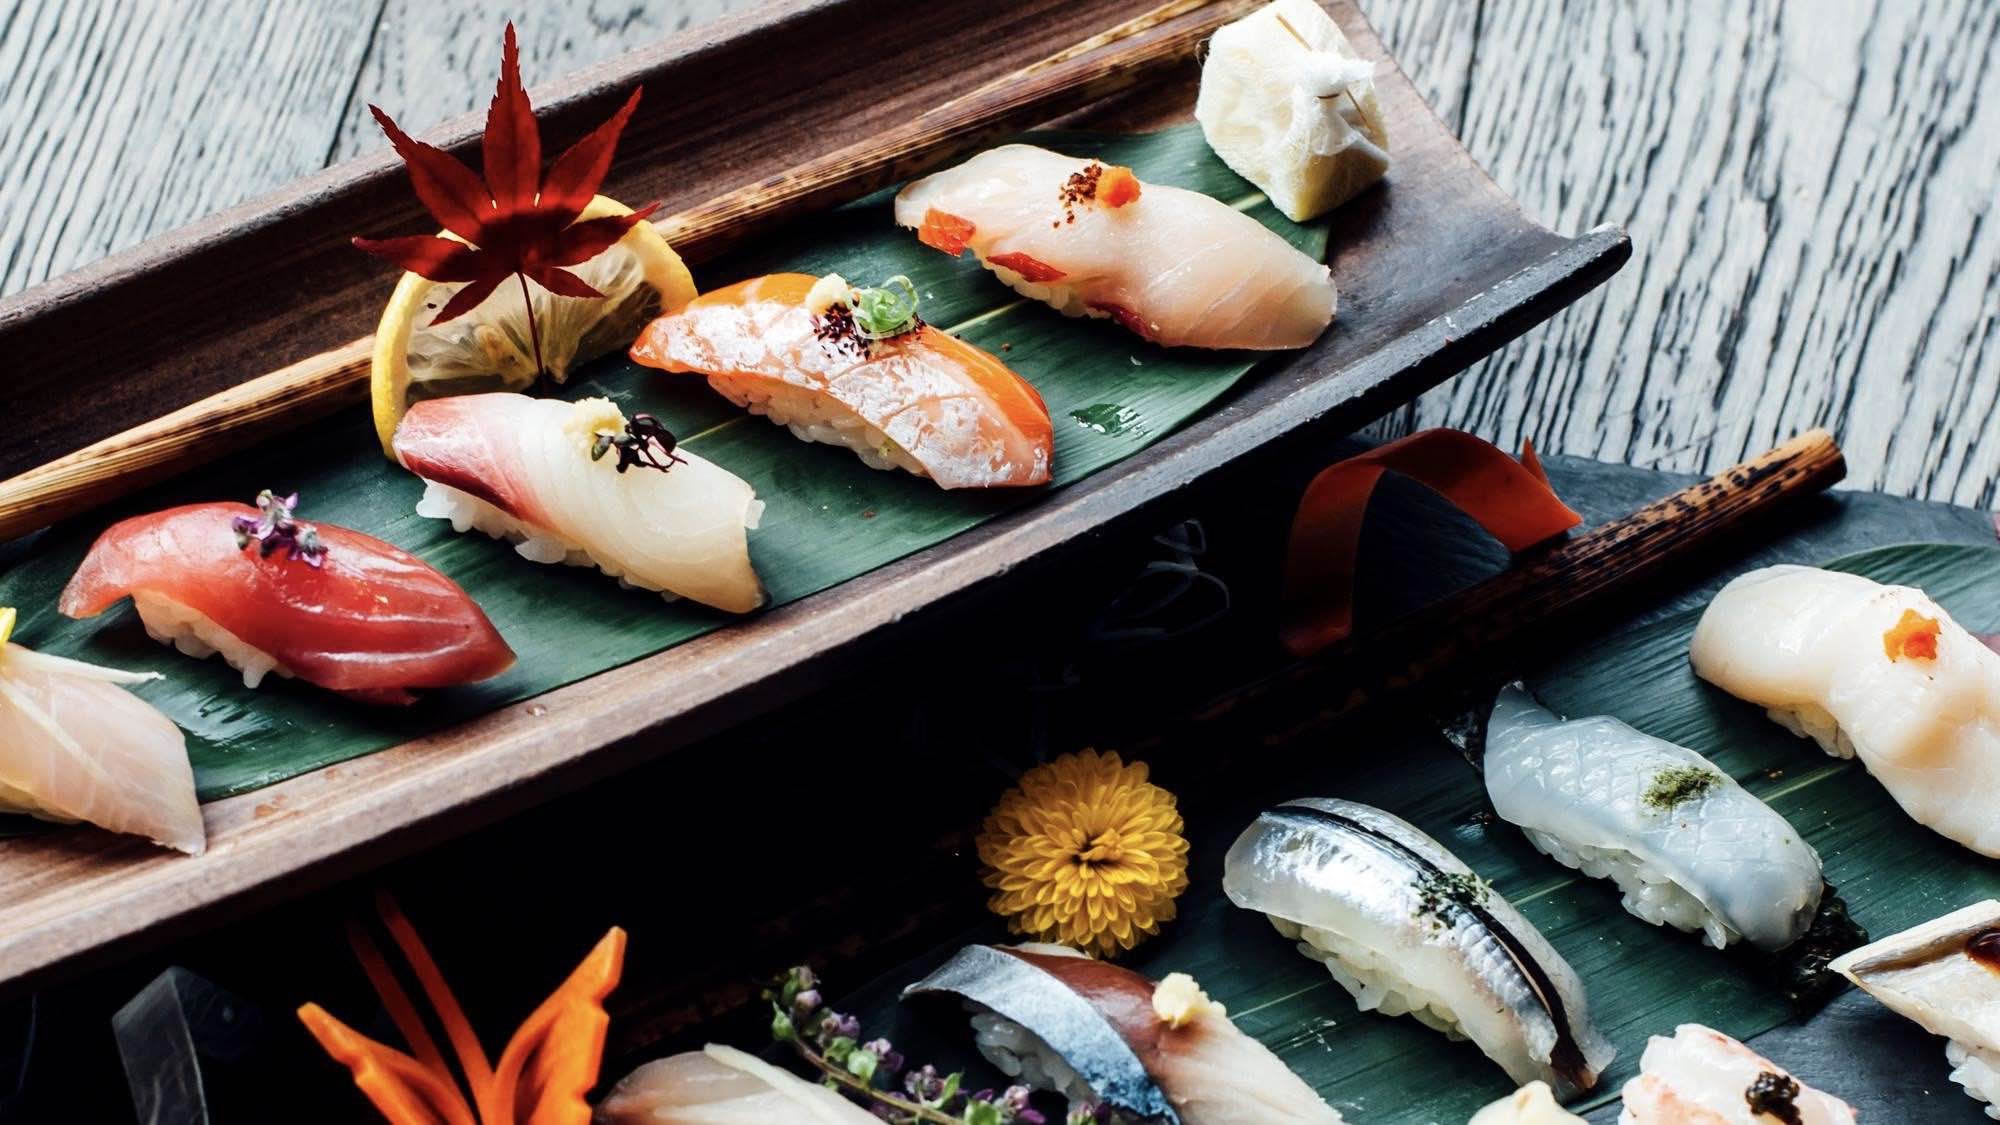 Kasa Moto sushi on trays